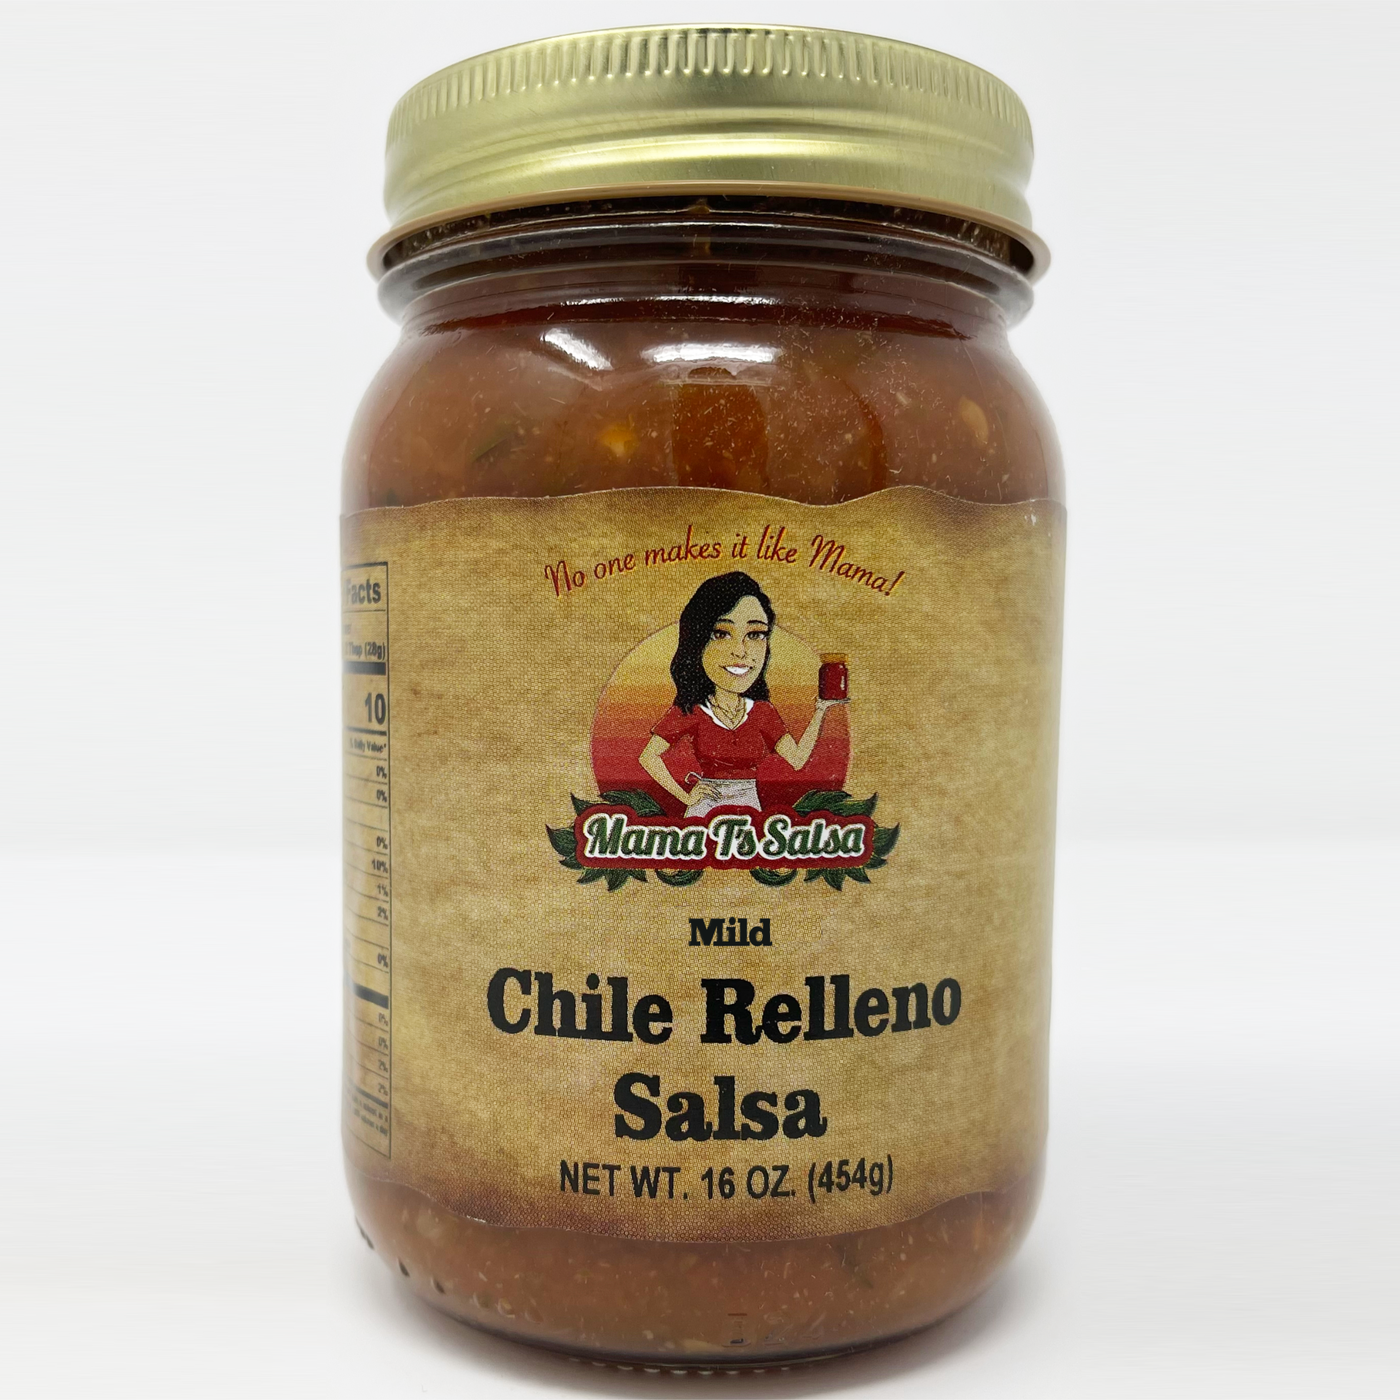 Chile Relleno Salsa